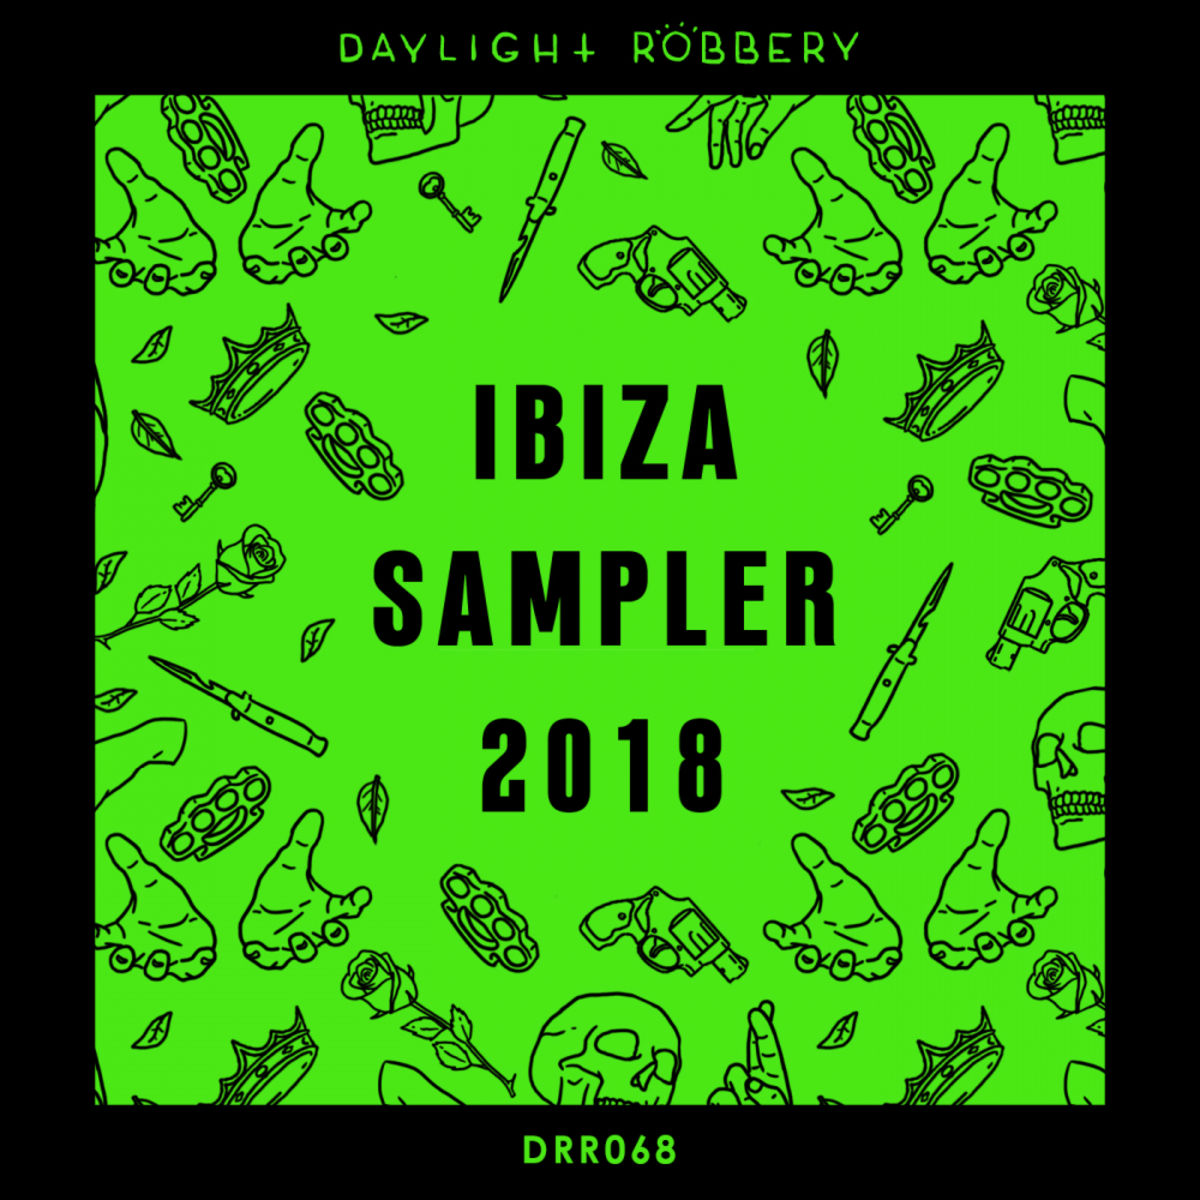 VA - Ibiza Sampler 2018 / Daylight Robbery Records